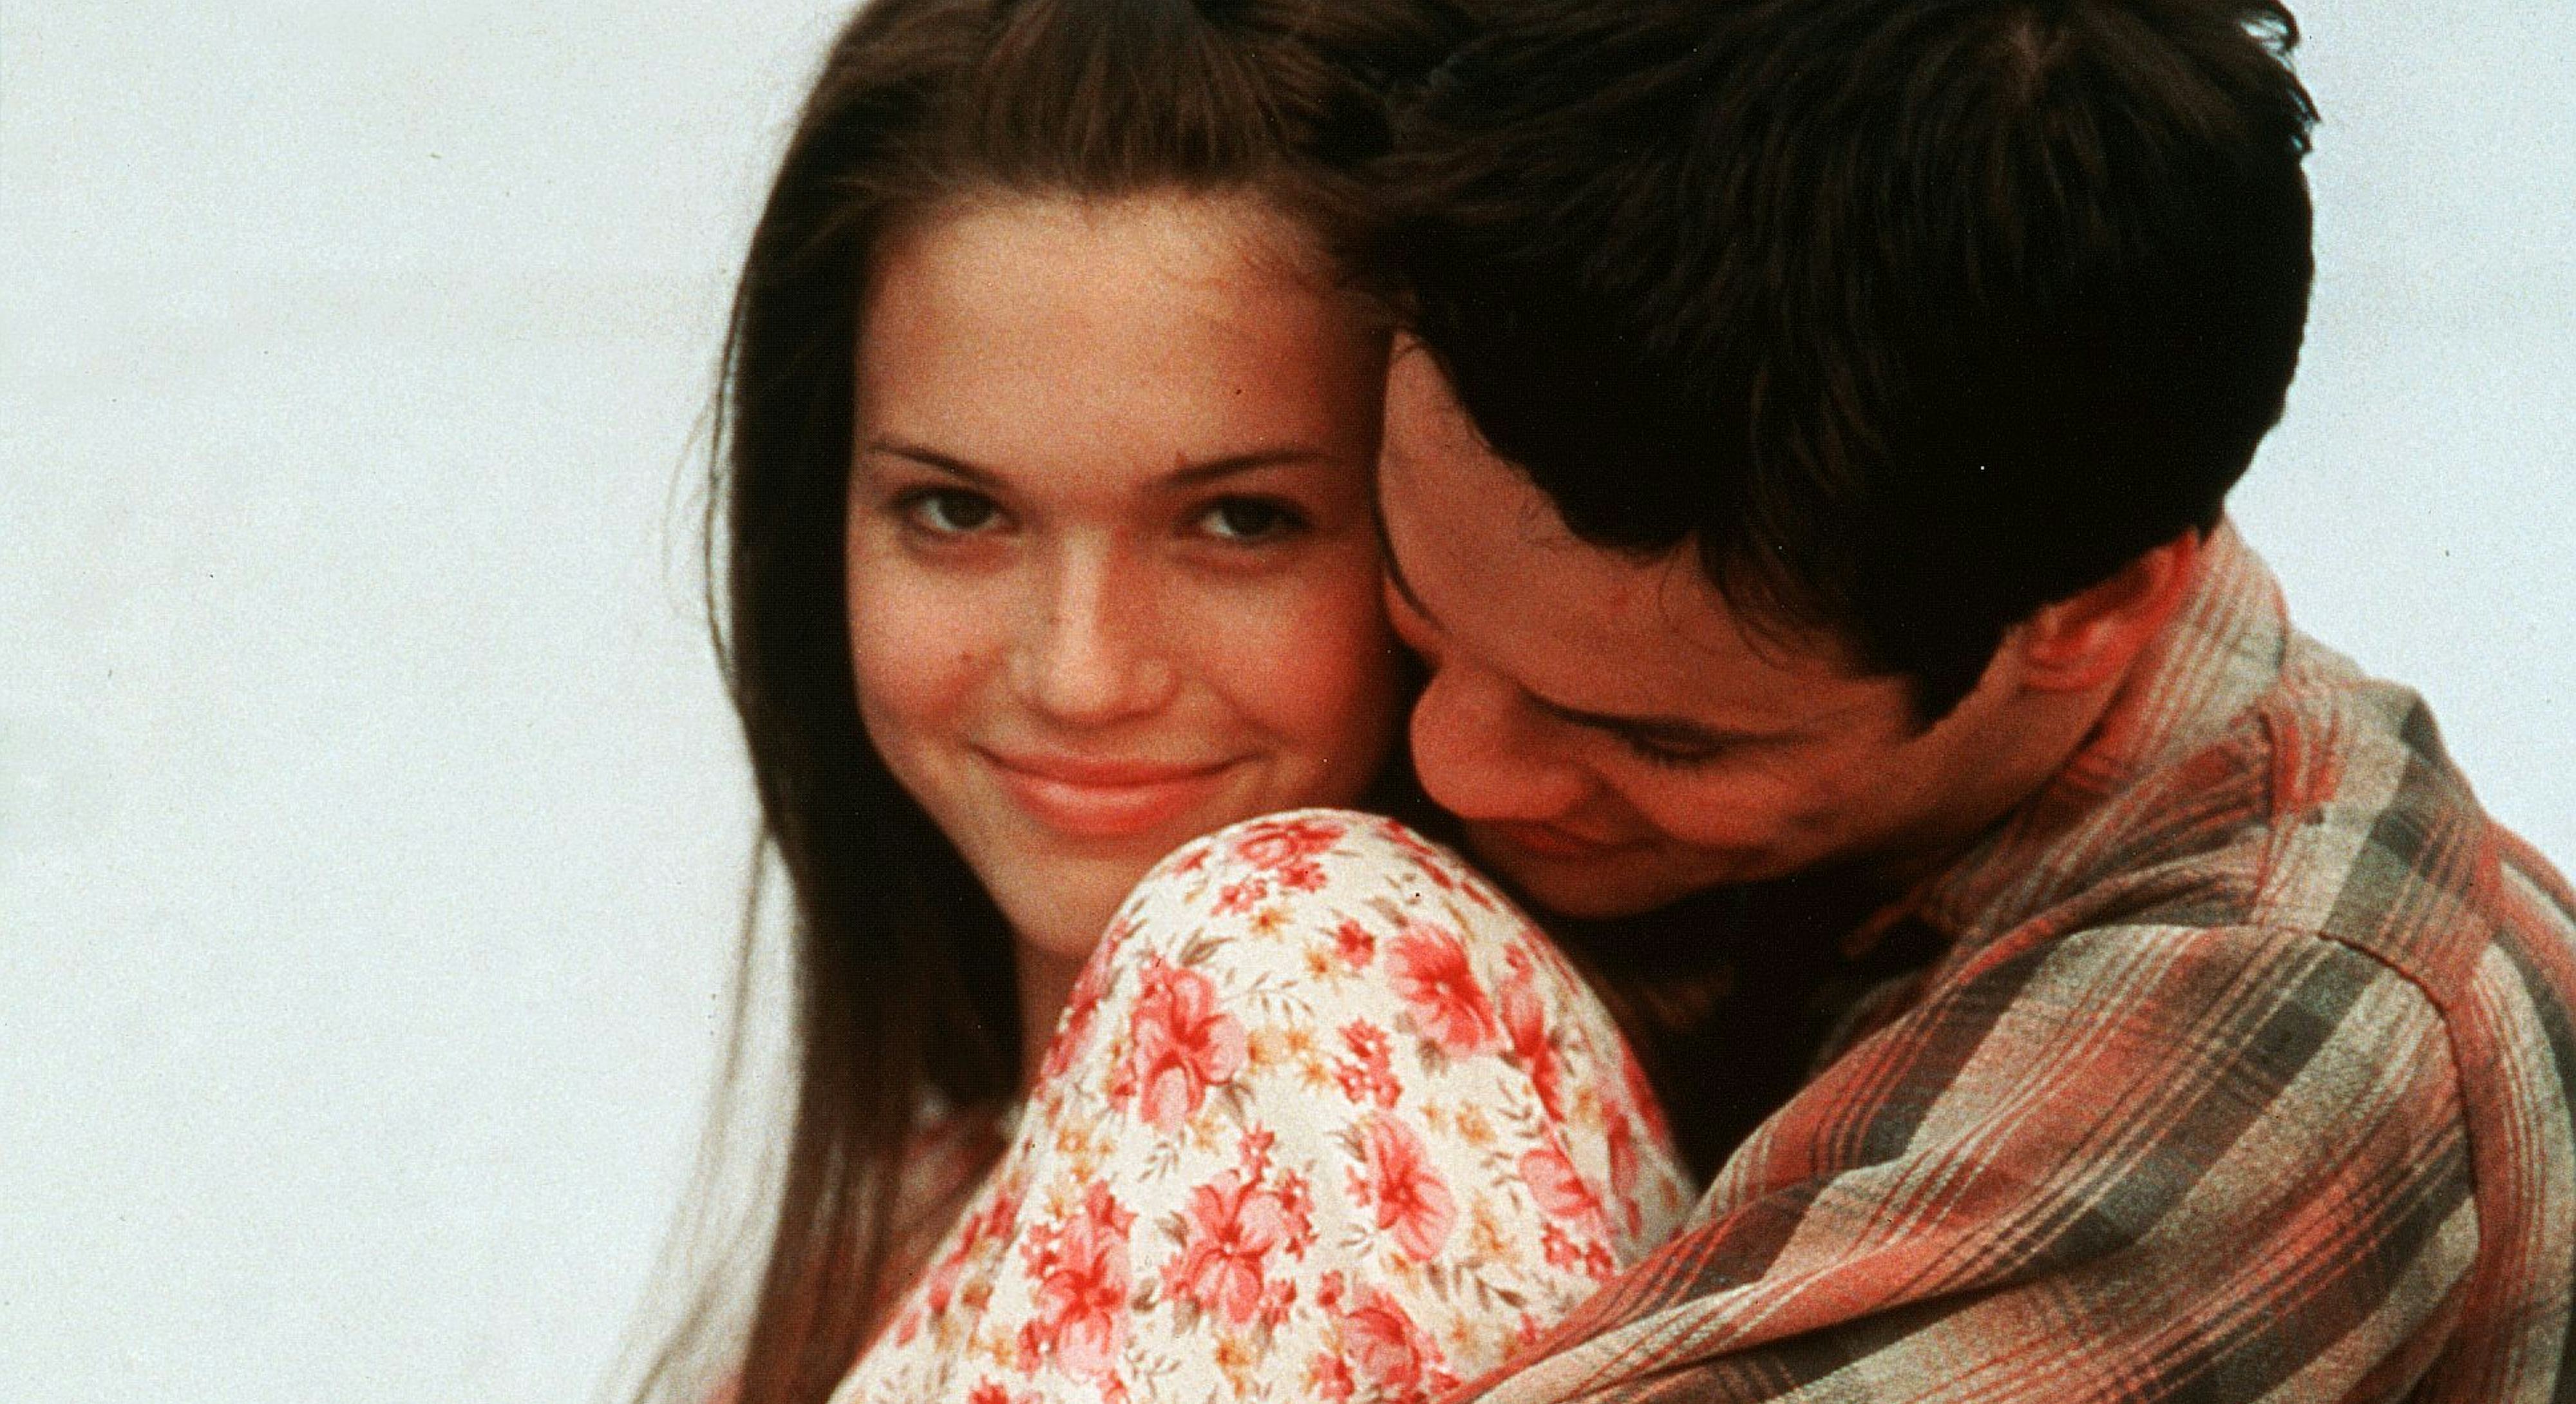 Слишком первая любовь 5. Спеши любить (2002). Шейн Уэст спеши любить. Спеши любить памятная прогулка [2002. Мэнди Мур спеши любить поцелуй.